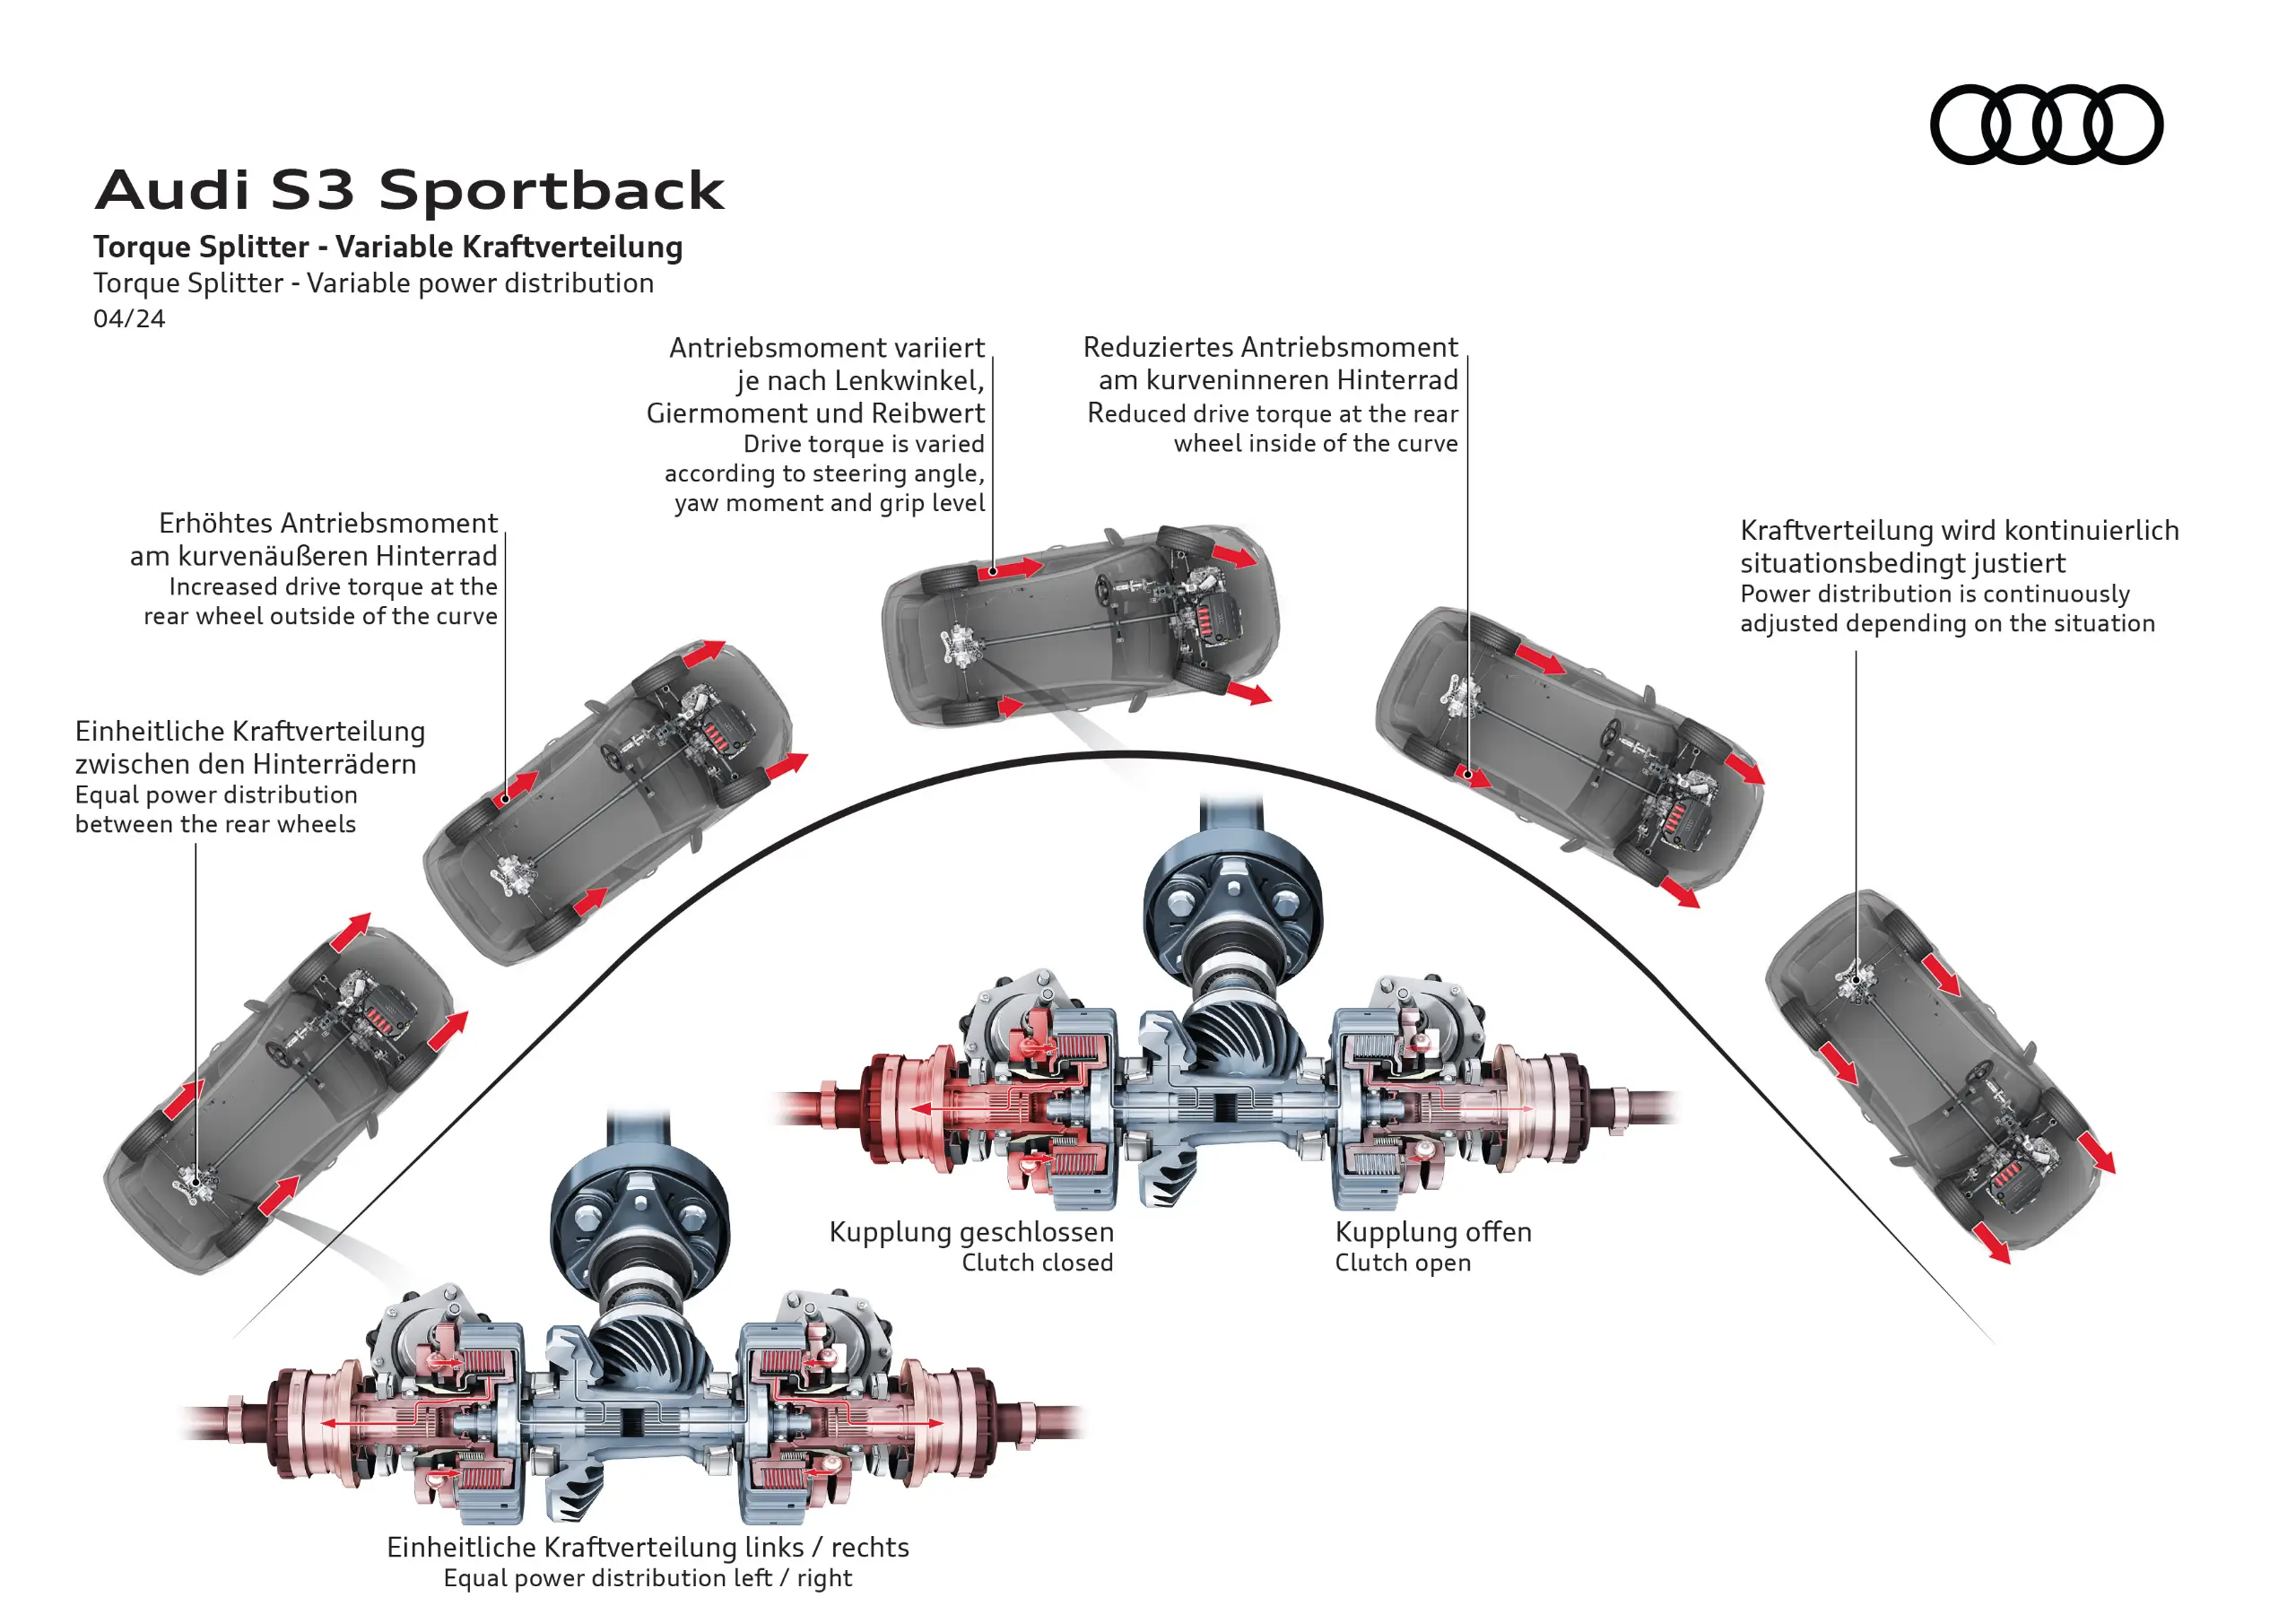 infografia que explica funcionamento do torque splitter